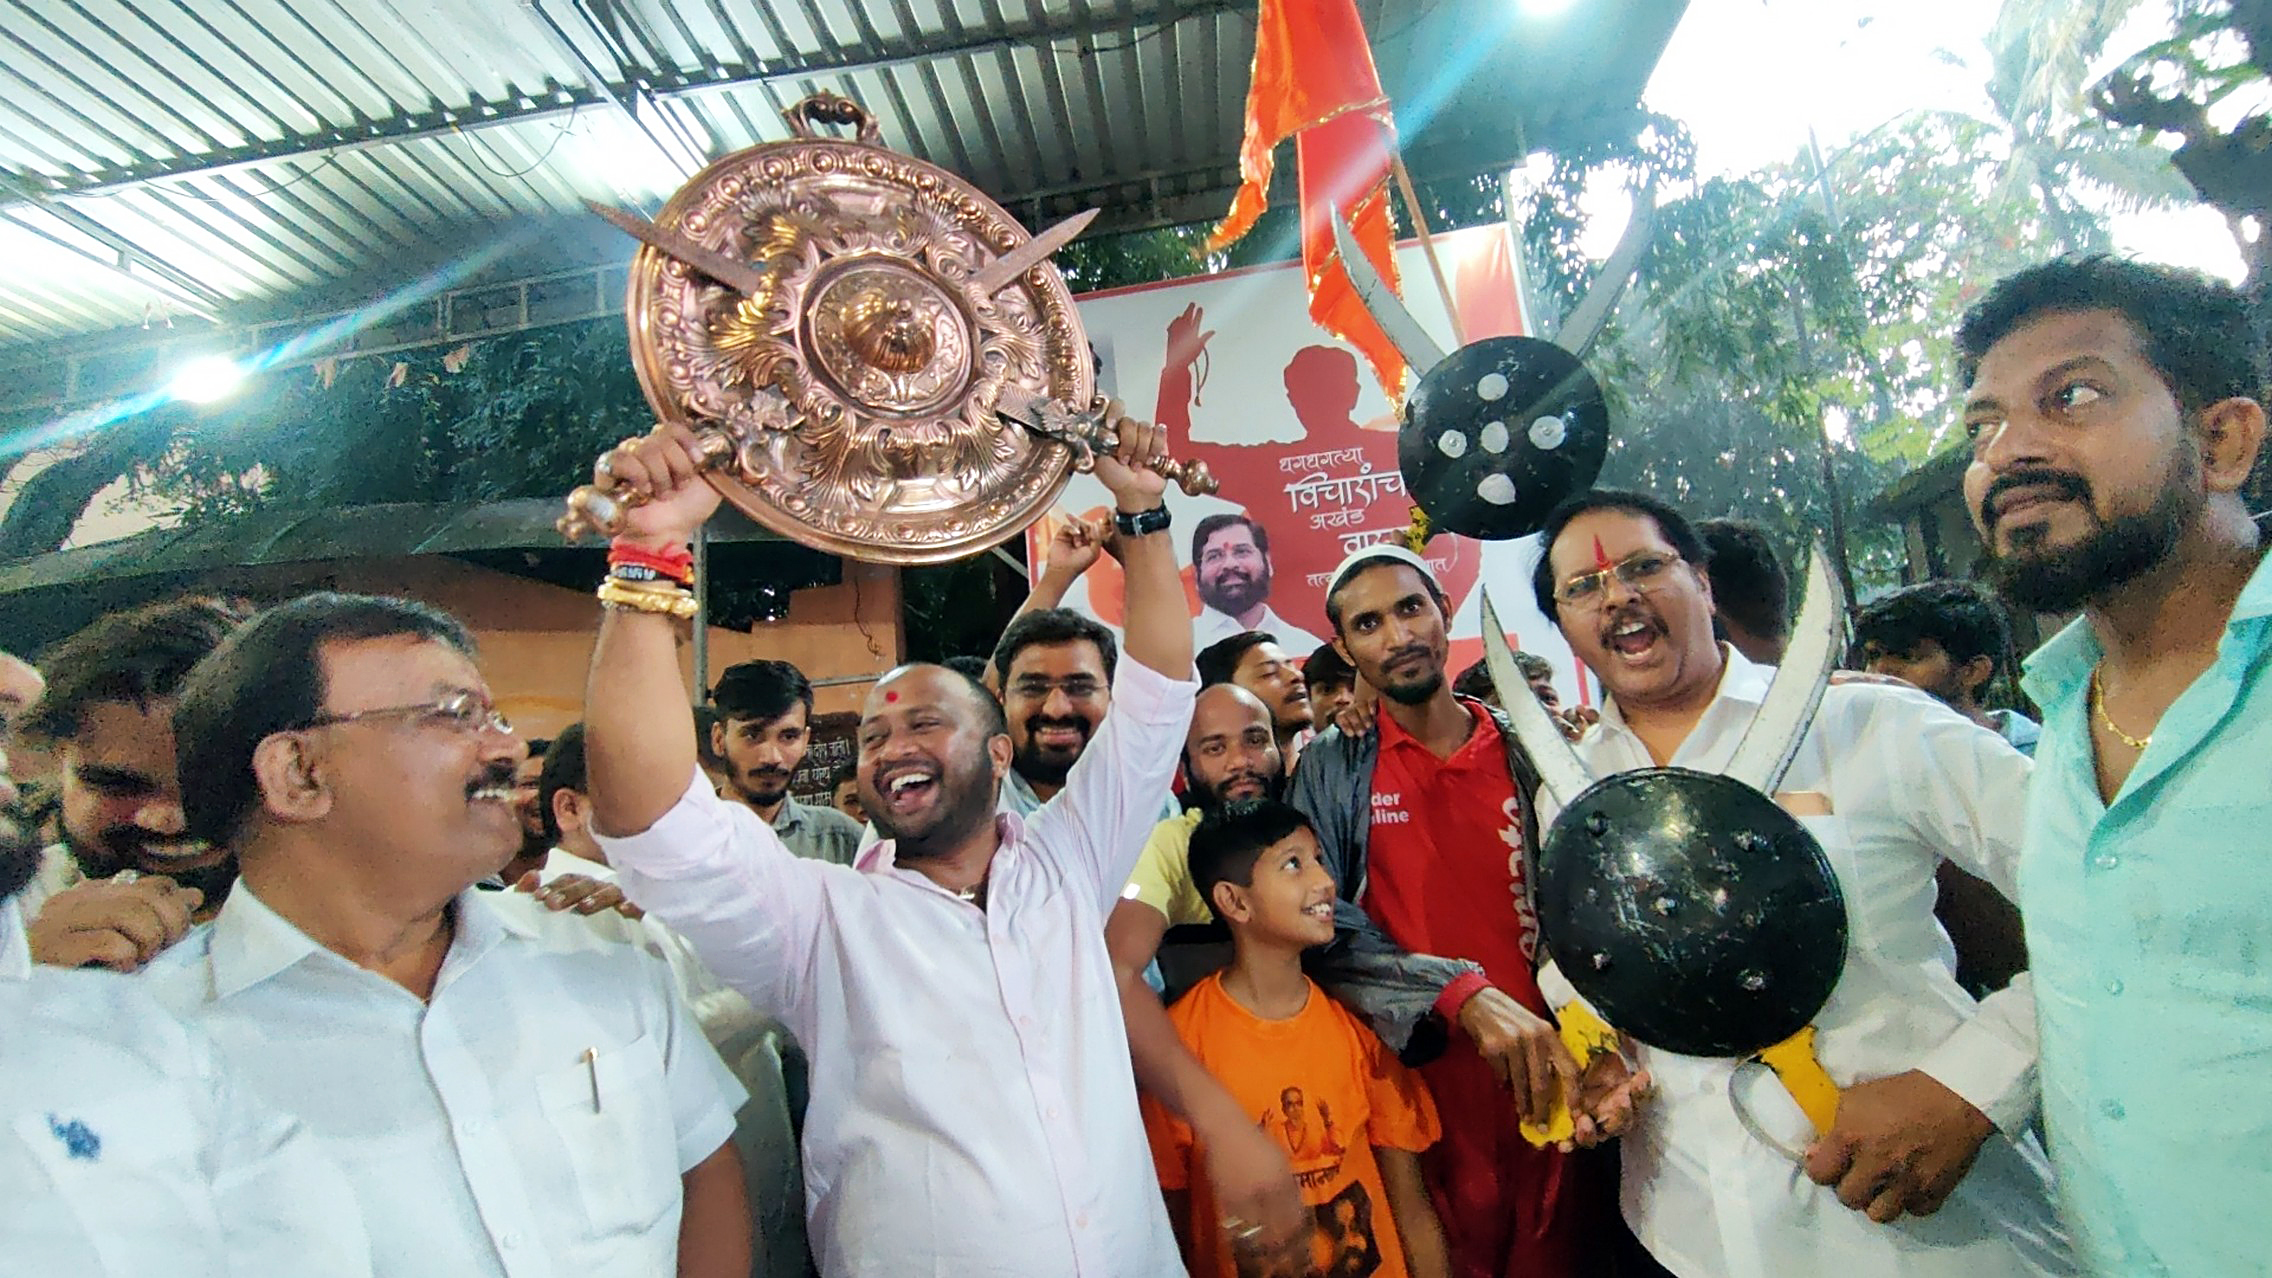 Battle of symbols: Shinde faction of Shiv Sena happy as Uddhav complains